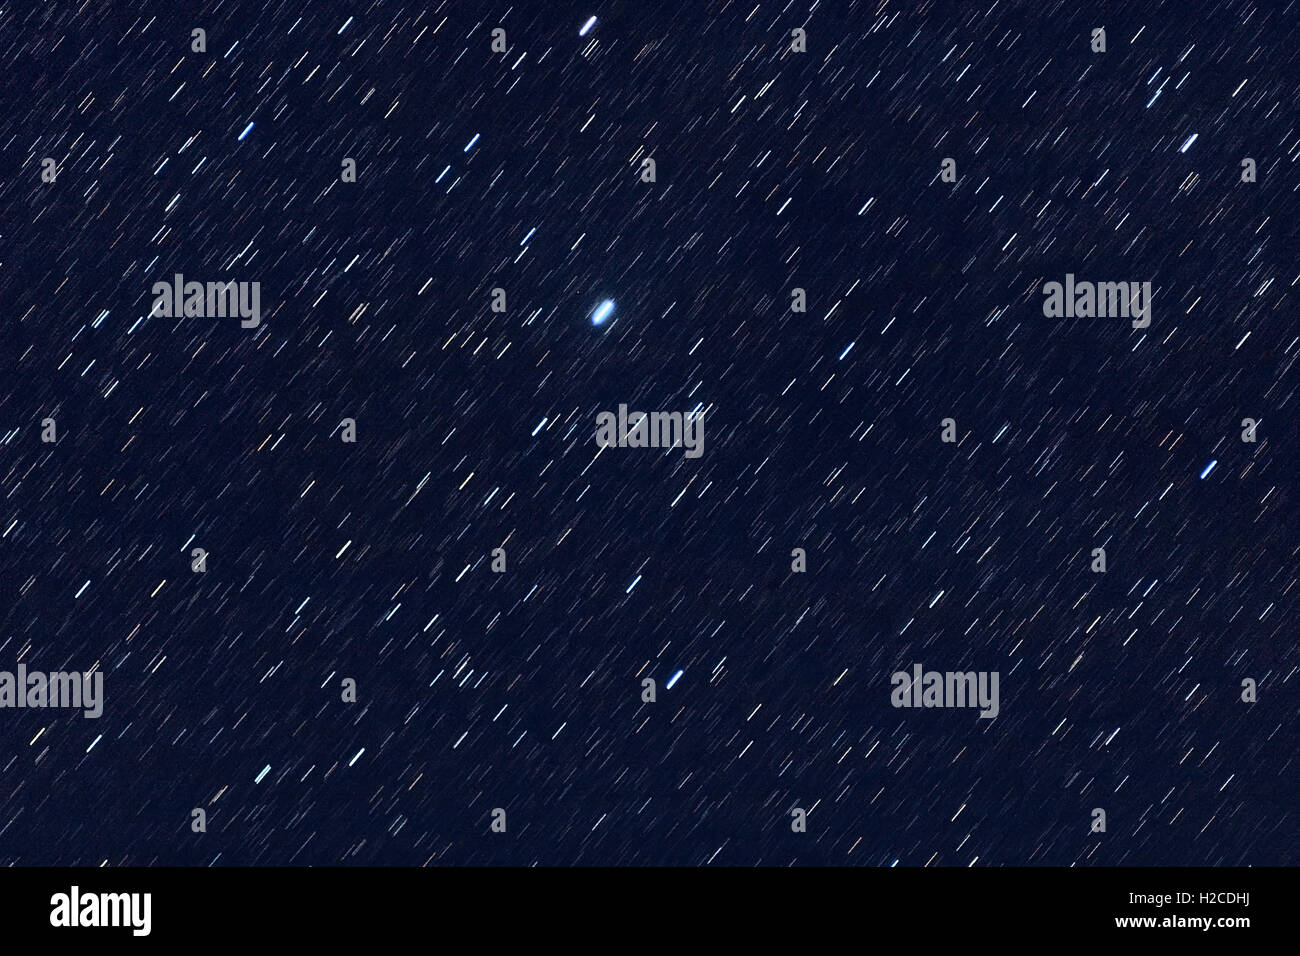 Astronomia universo spazio immagine - modello di tracce stellari con cielo notturno come sfondo. Foto Stock